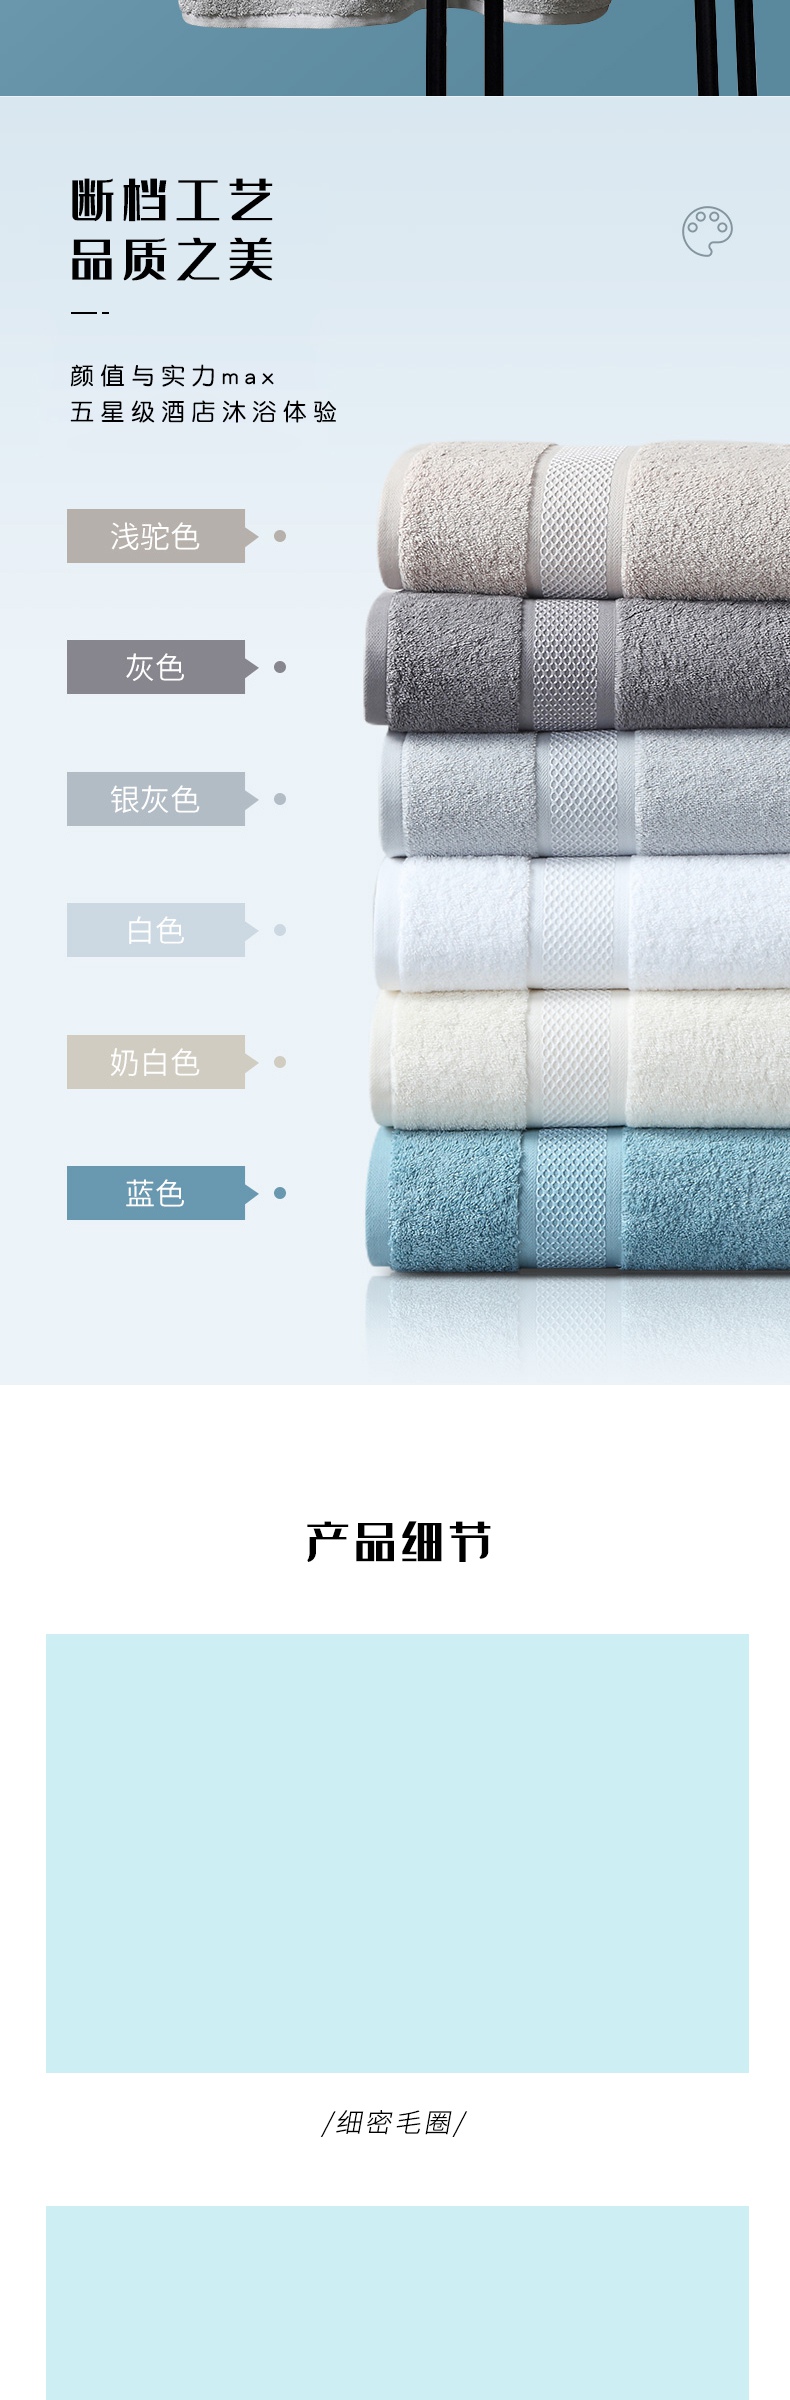 酒店专用简约清新毛巾详情页产品描述页通用